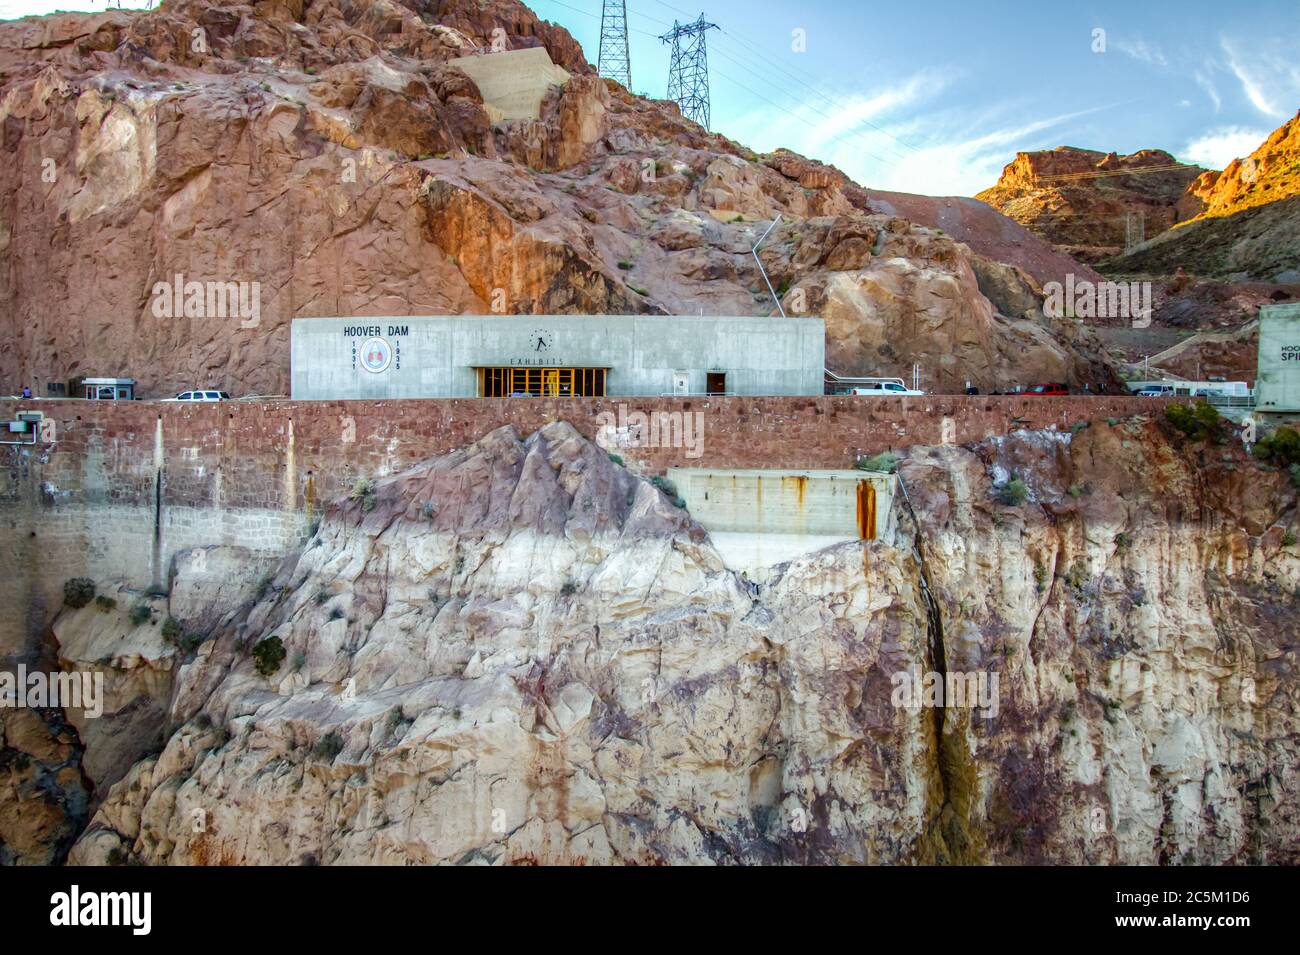 Außenansicht des Hoover Dam Visitor Center an der Grenze zu Nevada Arizona. Stockfoto